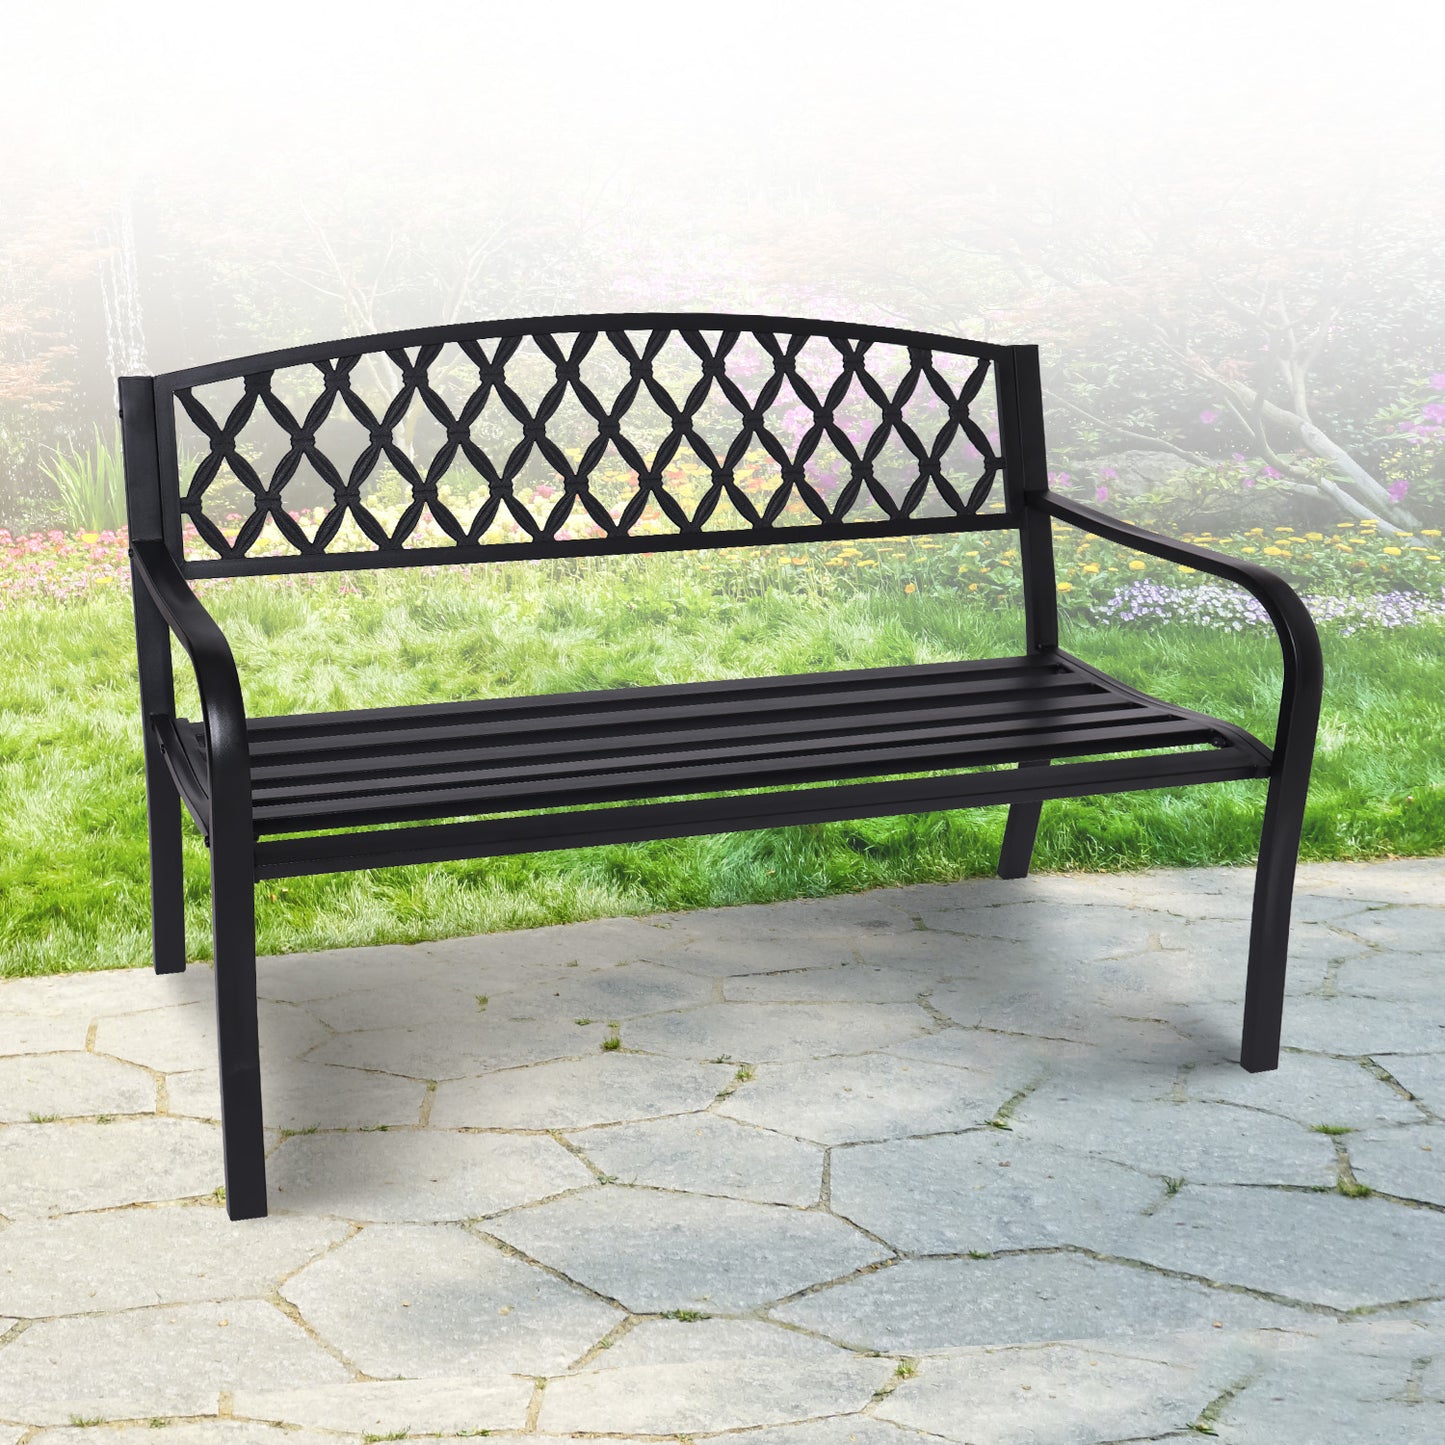 Outdoor Bench Seat Wallaroo Steel Metal Garden Black - Diamond